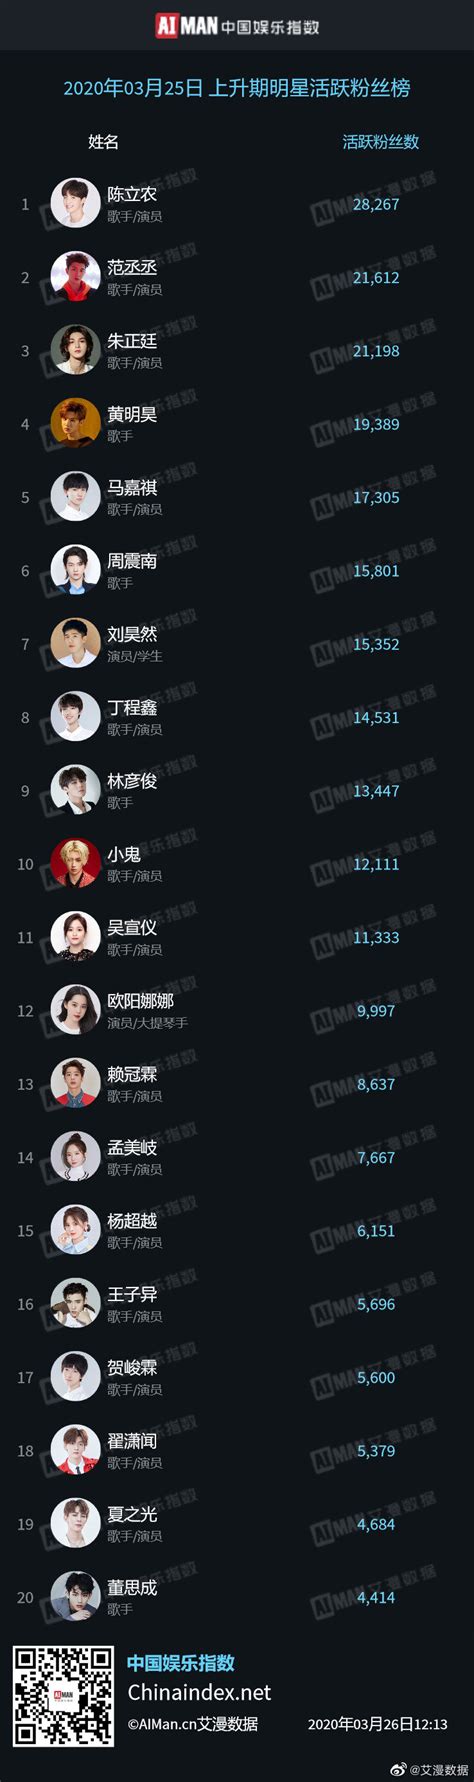 艾漫数据昨日上升期明星活跃粉丝榜公布 陈立农再次拿下榜单一位_工作